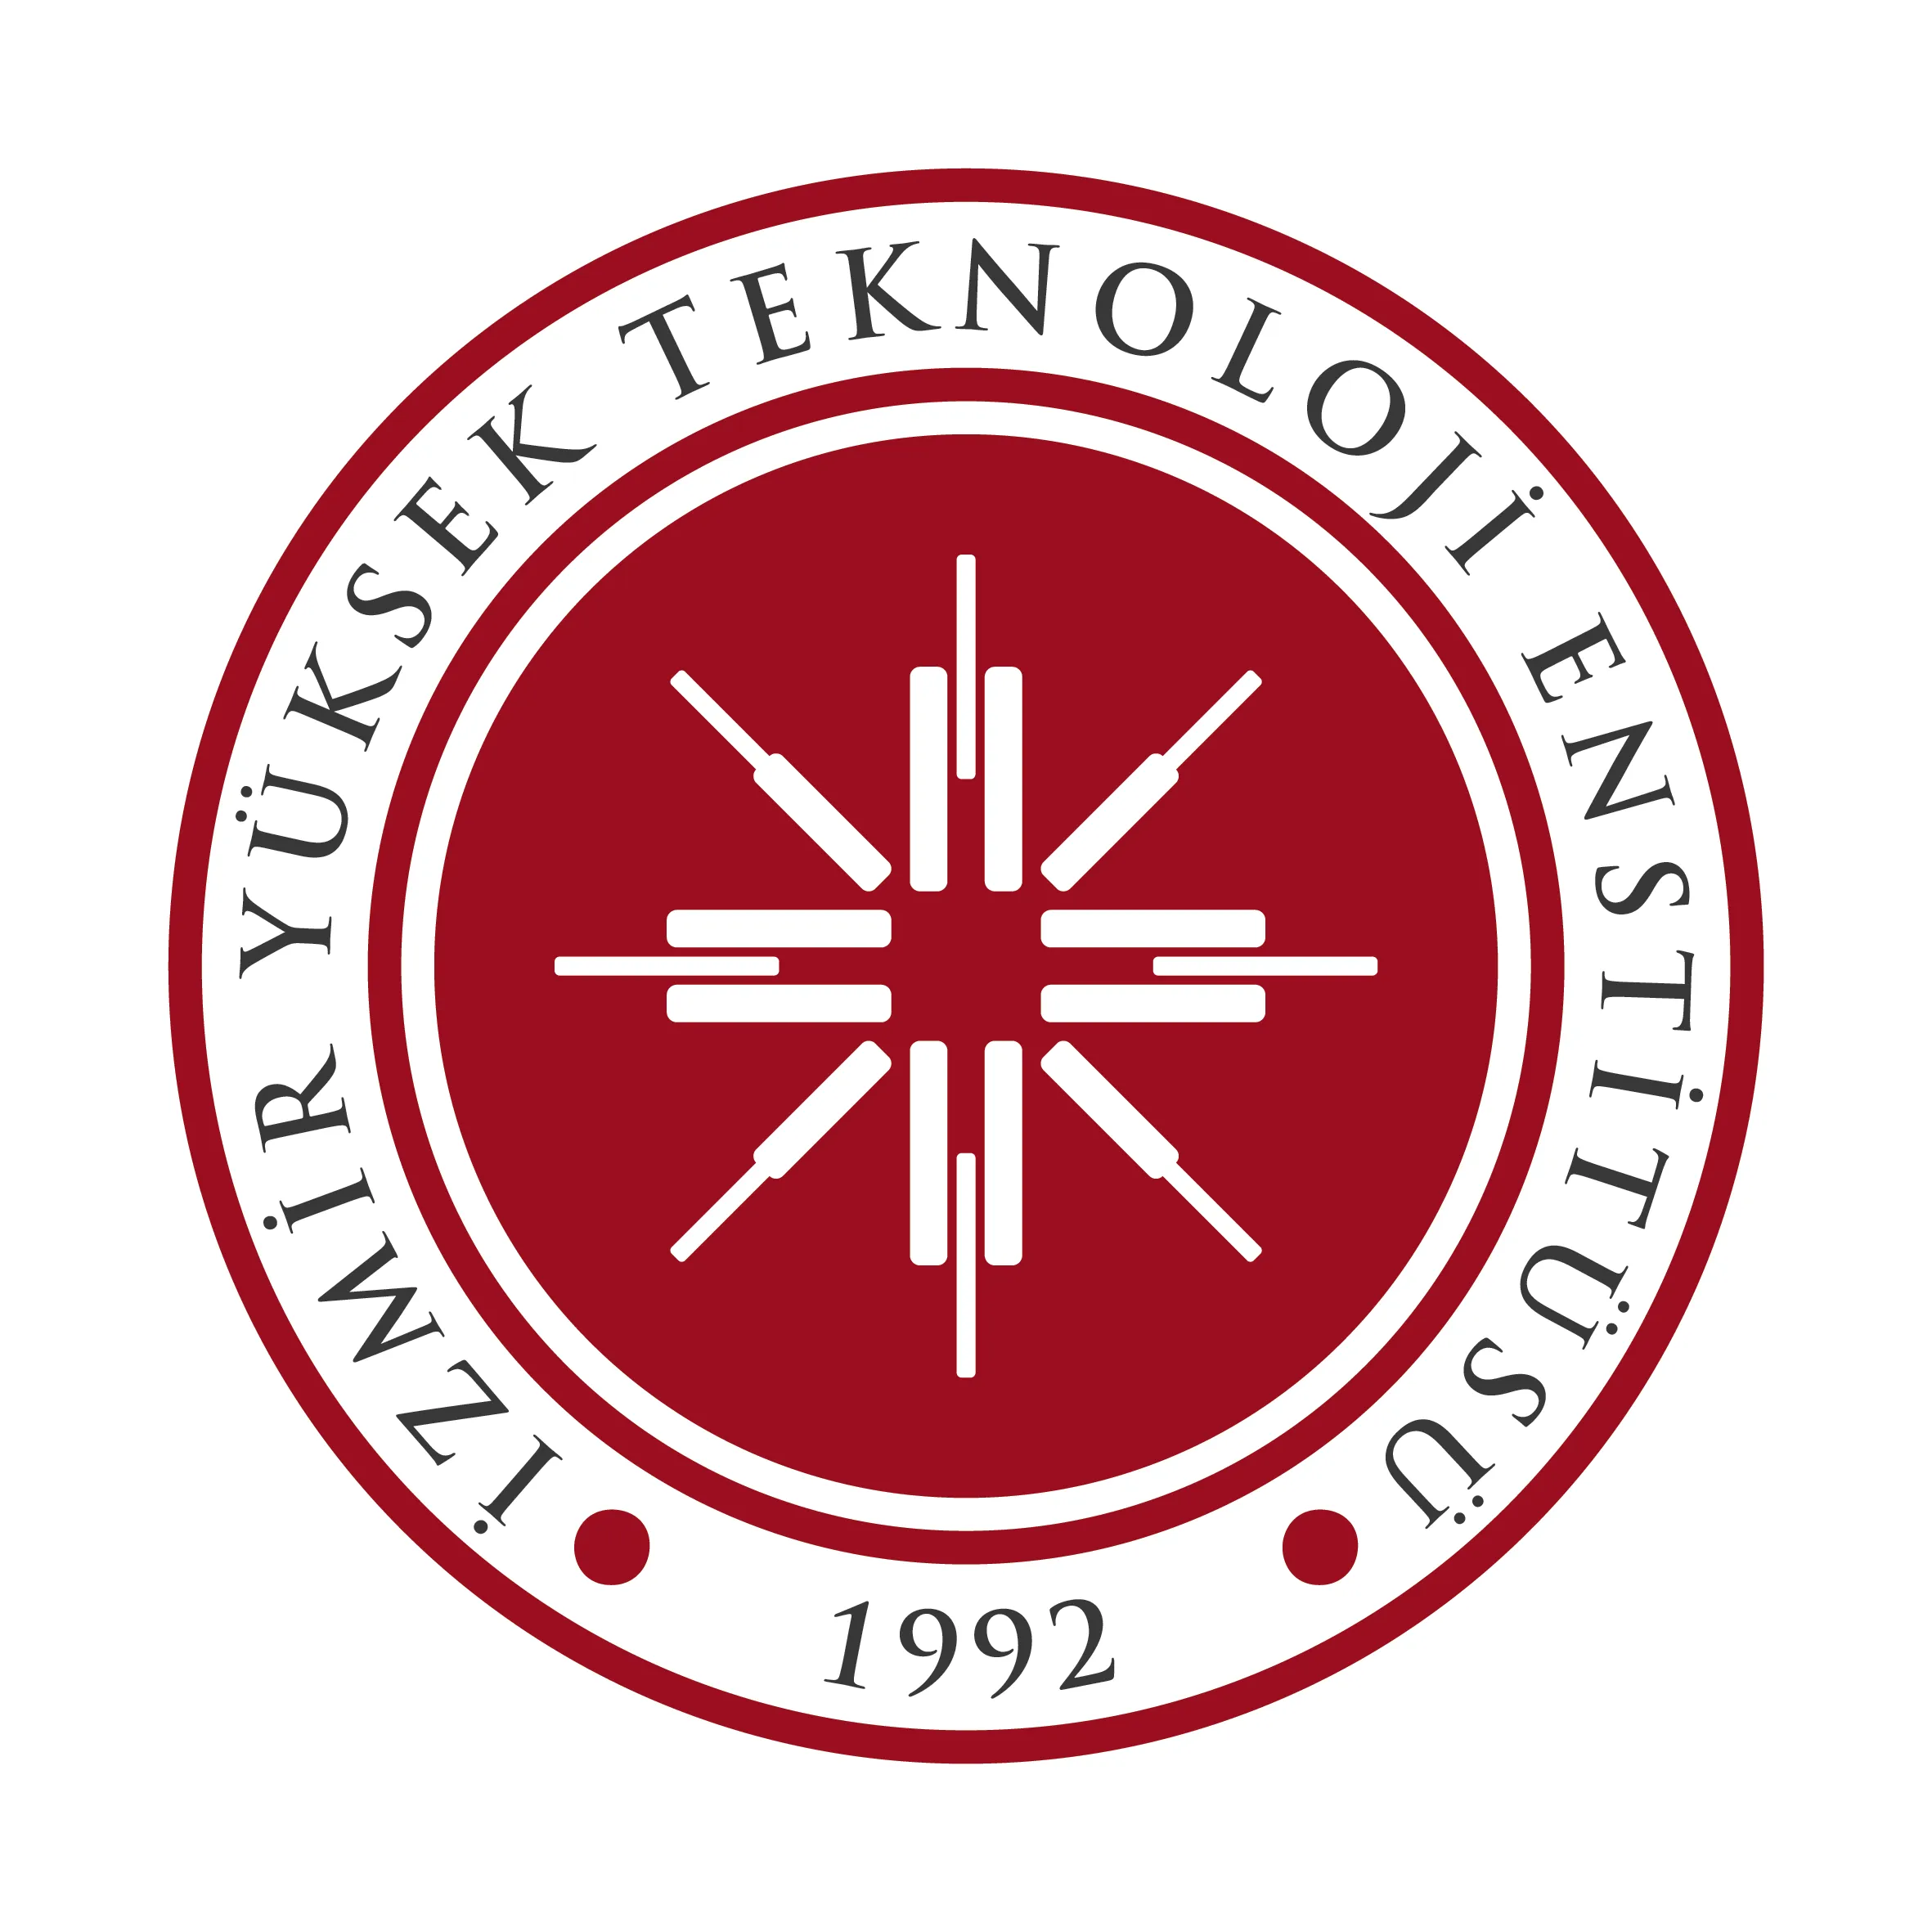 İzmir Yüksek Teknoloji Enstitüsü 19 Araştırma Görevlisi alacaktır Son başvuru tarihi 24 Aralık 2021